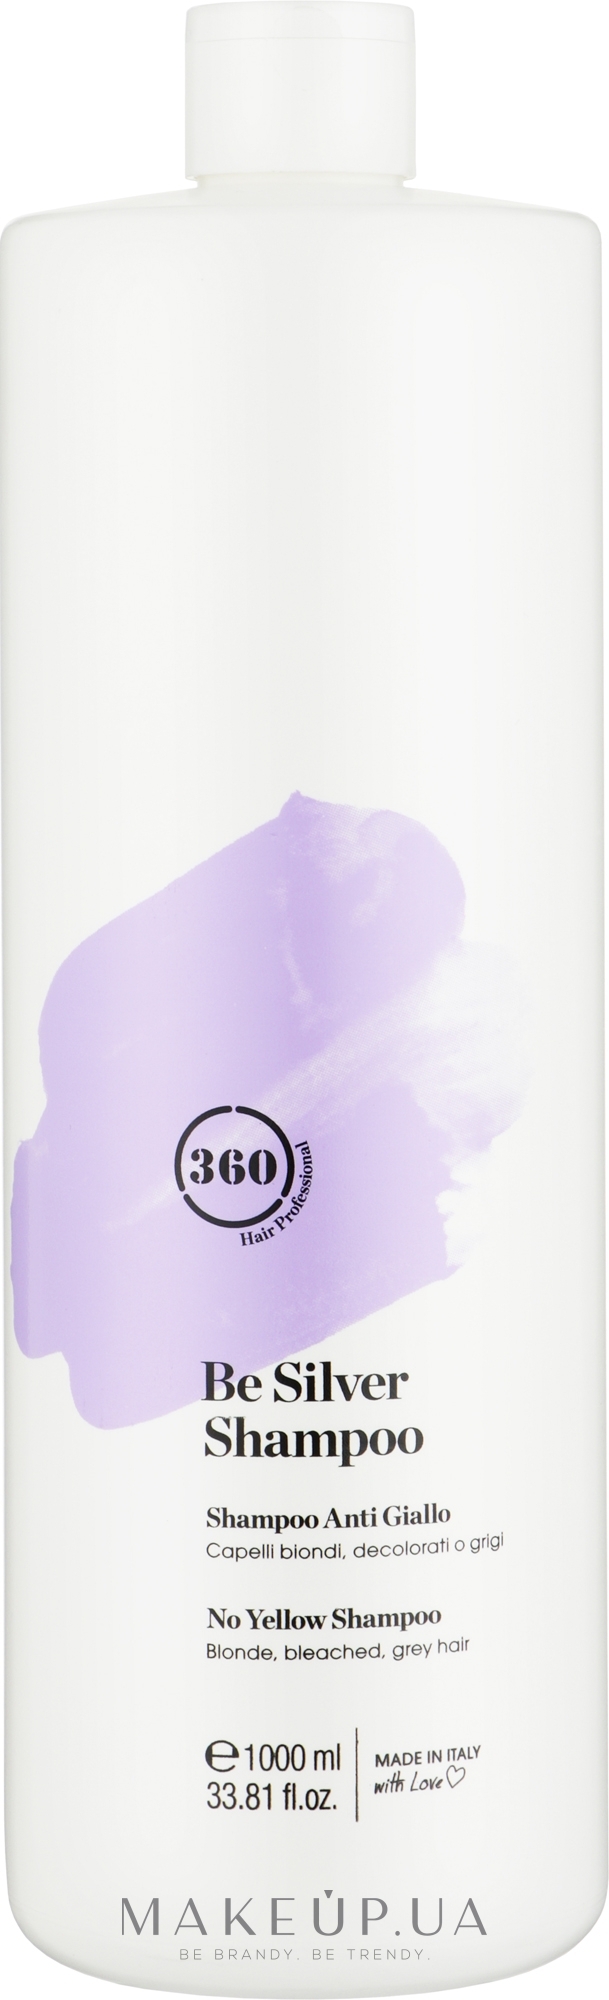 Шампунь для волосся антижовтий "Сріблястий блонд" - 360 Be Silver Shampoo — фото 1000ml